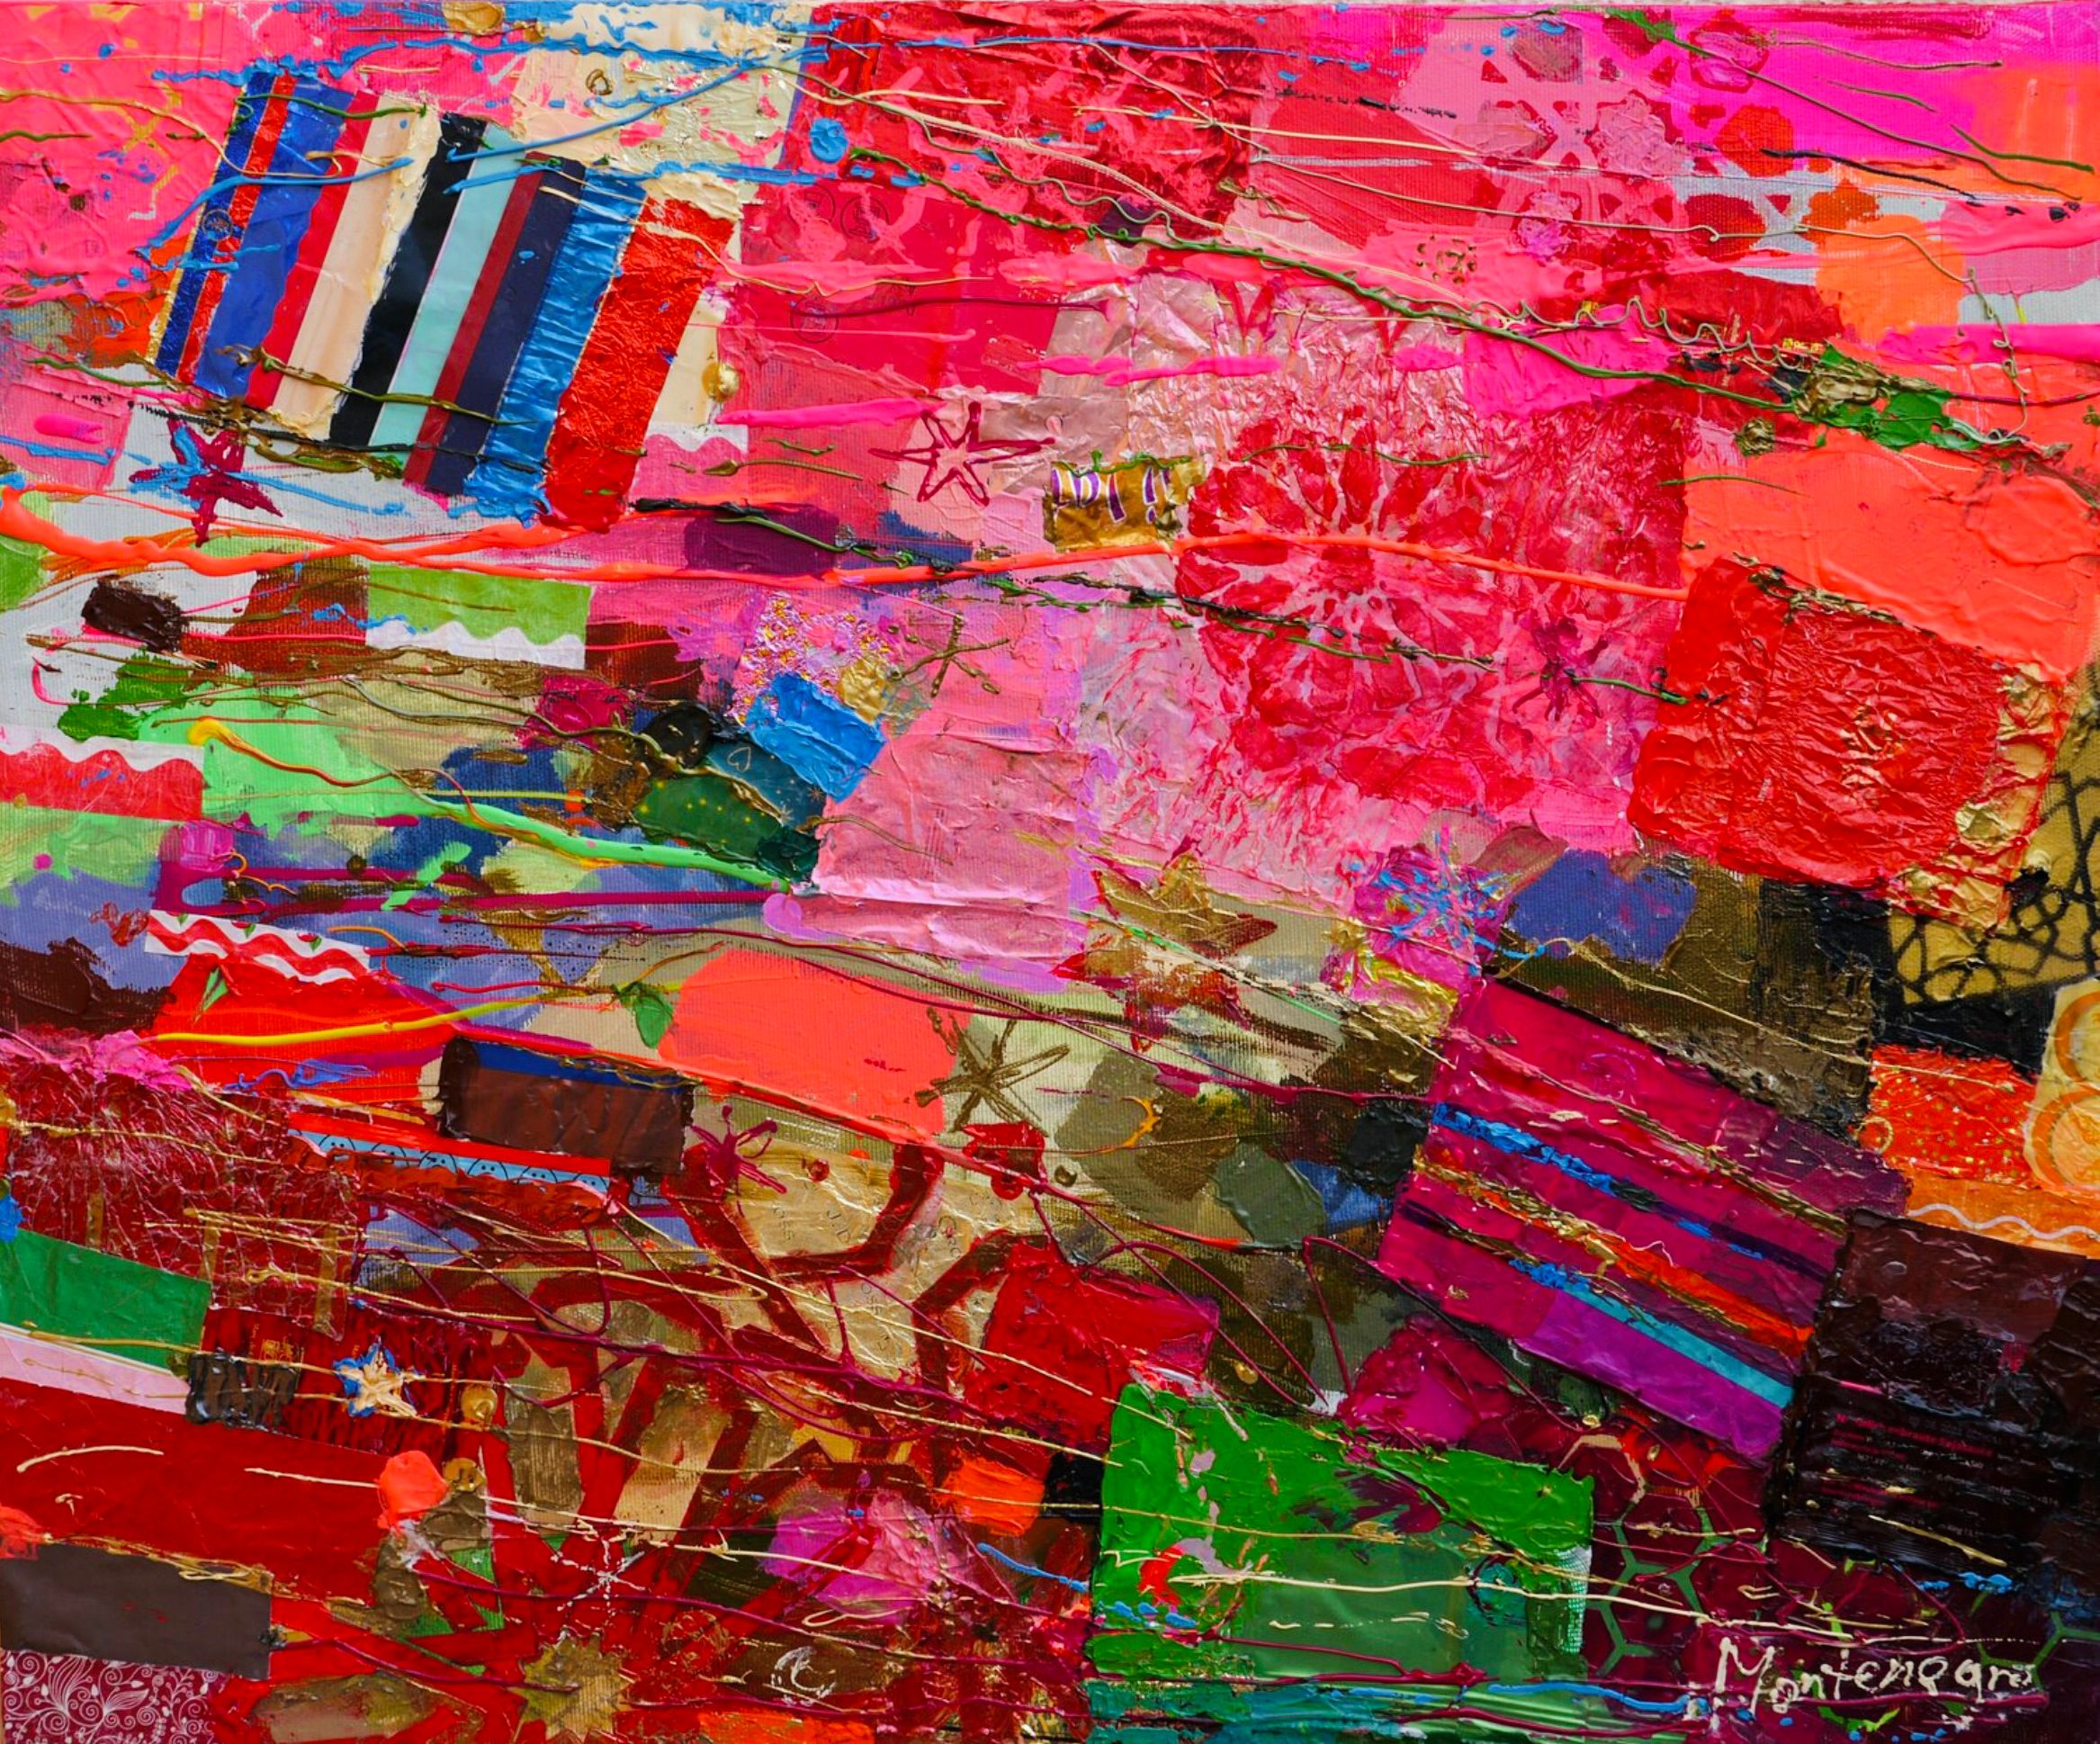 Miriam Montenegro pittura espressionista rosa e motivi da tappeto rosso